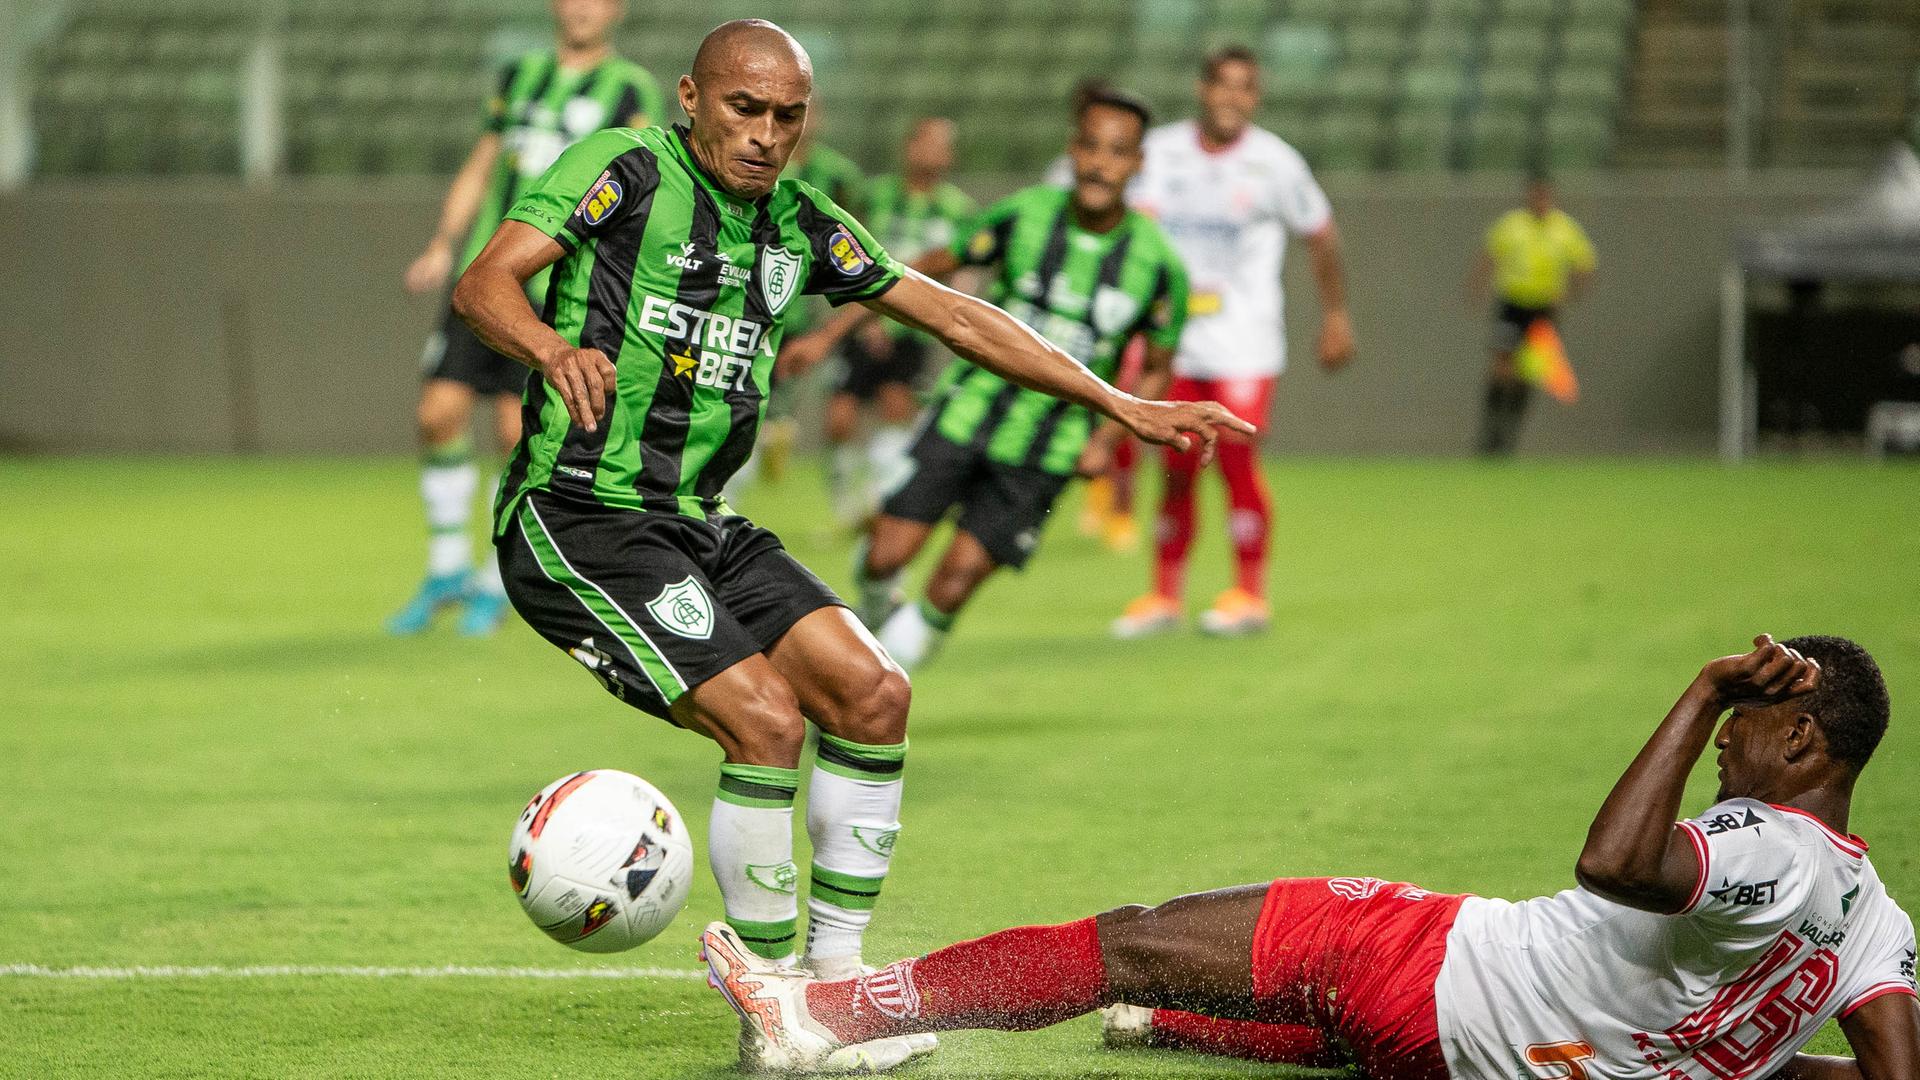 Spielszene aus dem Spiel America MG gegen Vila Nova in der brasilianischen 2. Fußball-Liga